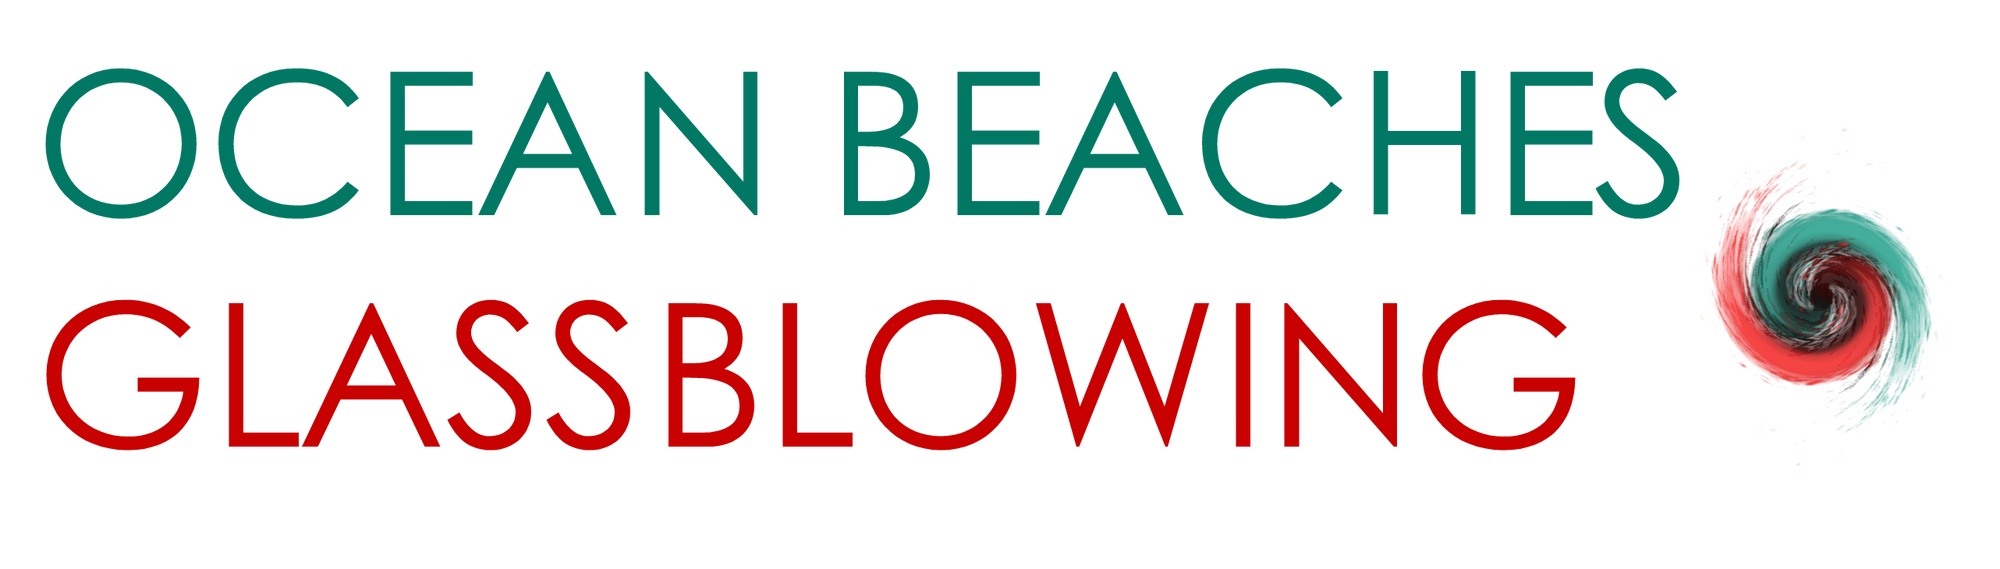 Ocean Beaches Glassblowing & Gallery